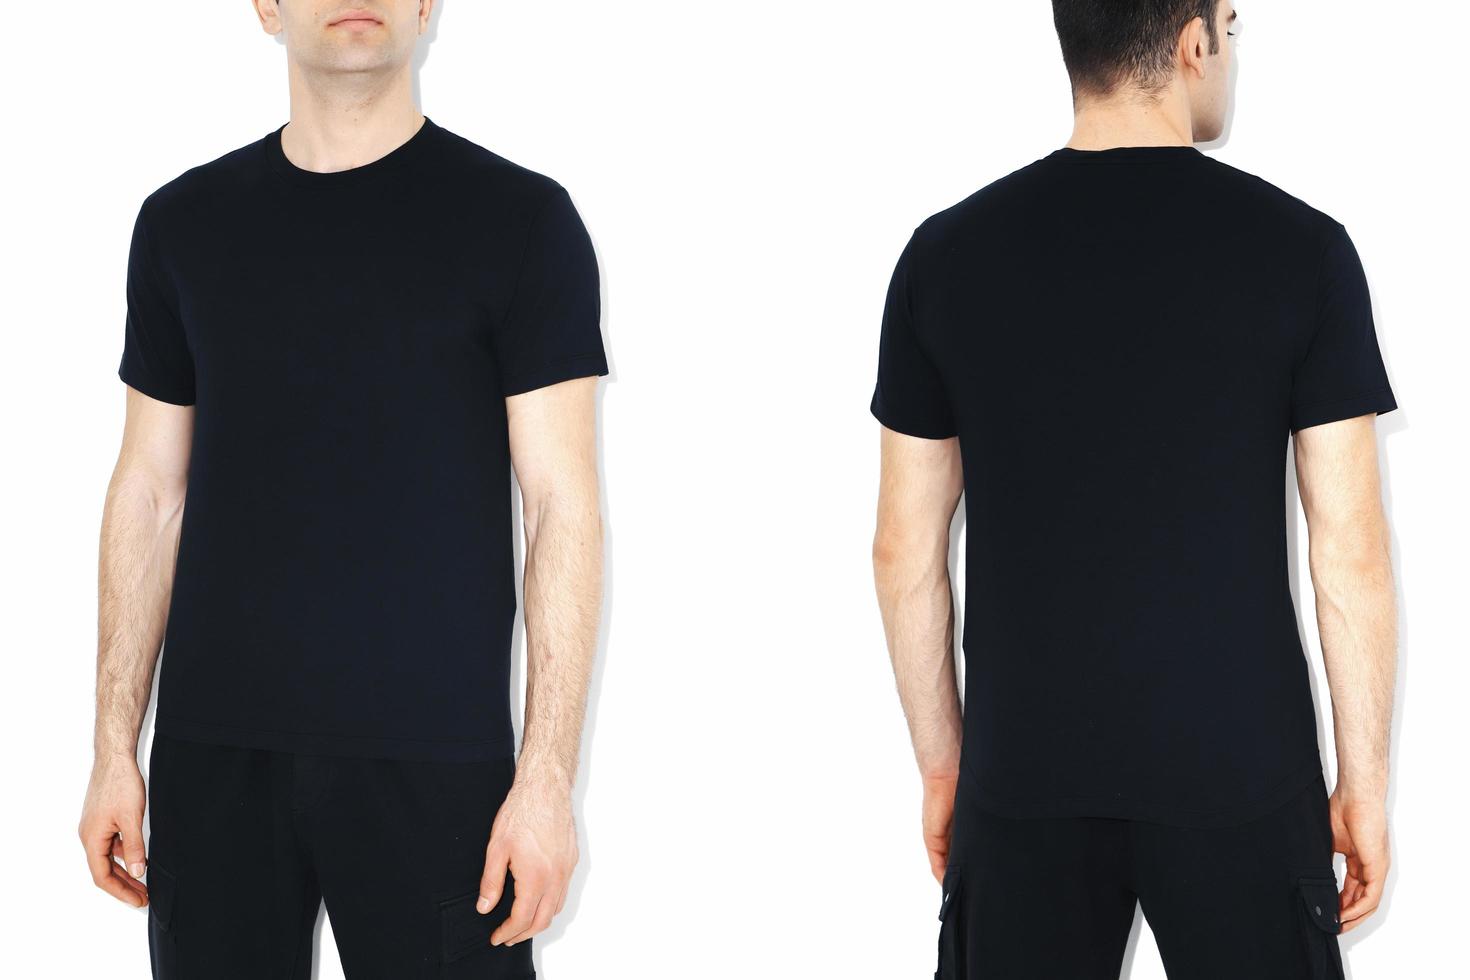 isoliertes schwarzes t-shirt modell vorderansicht foto